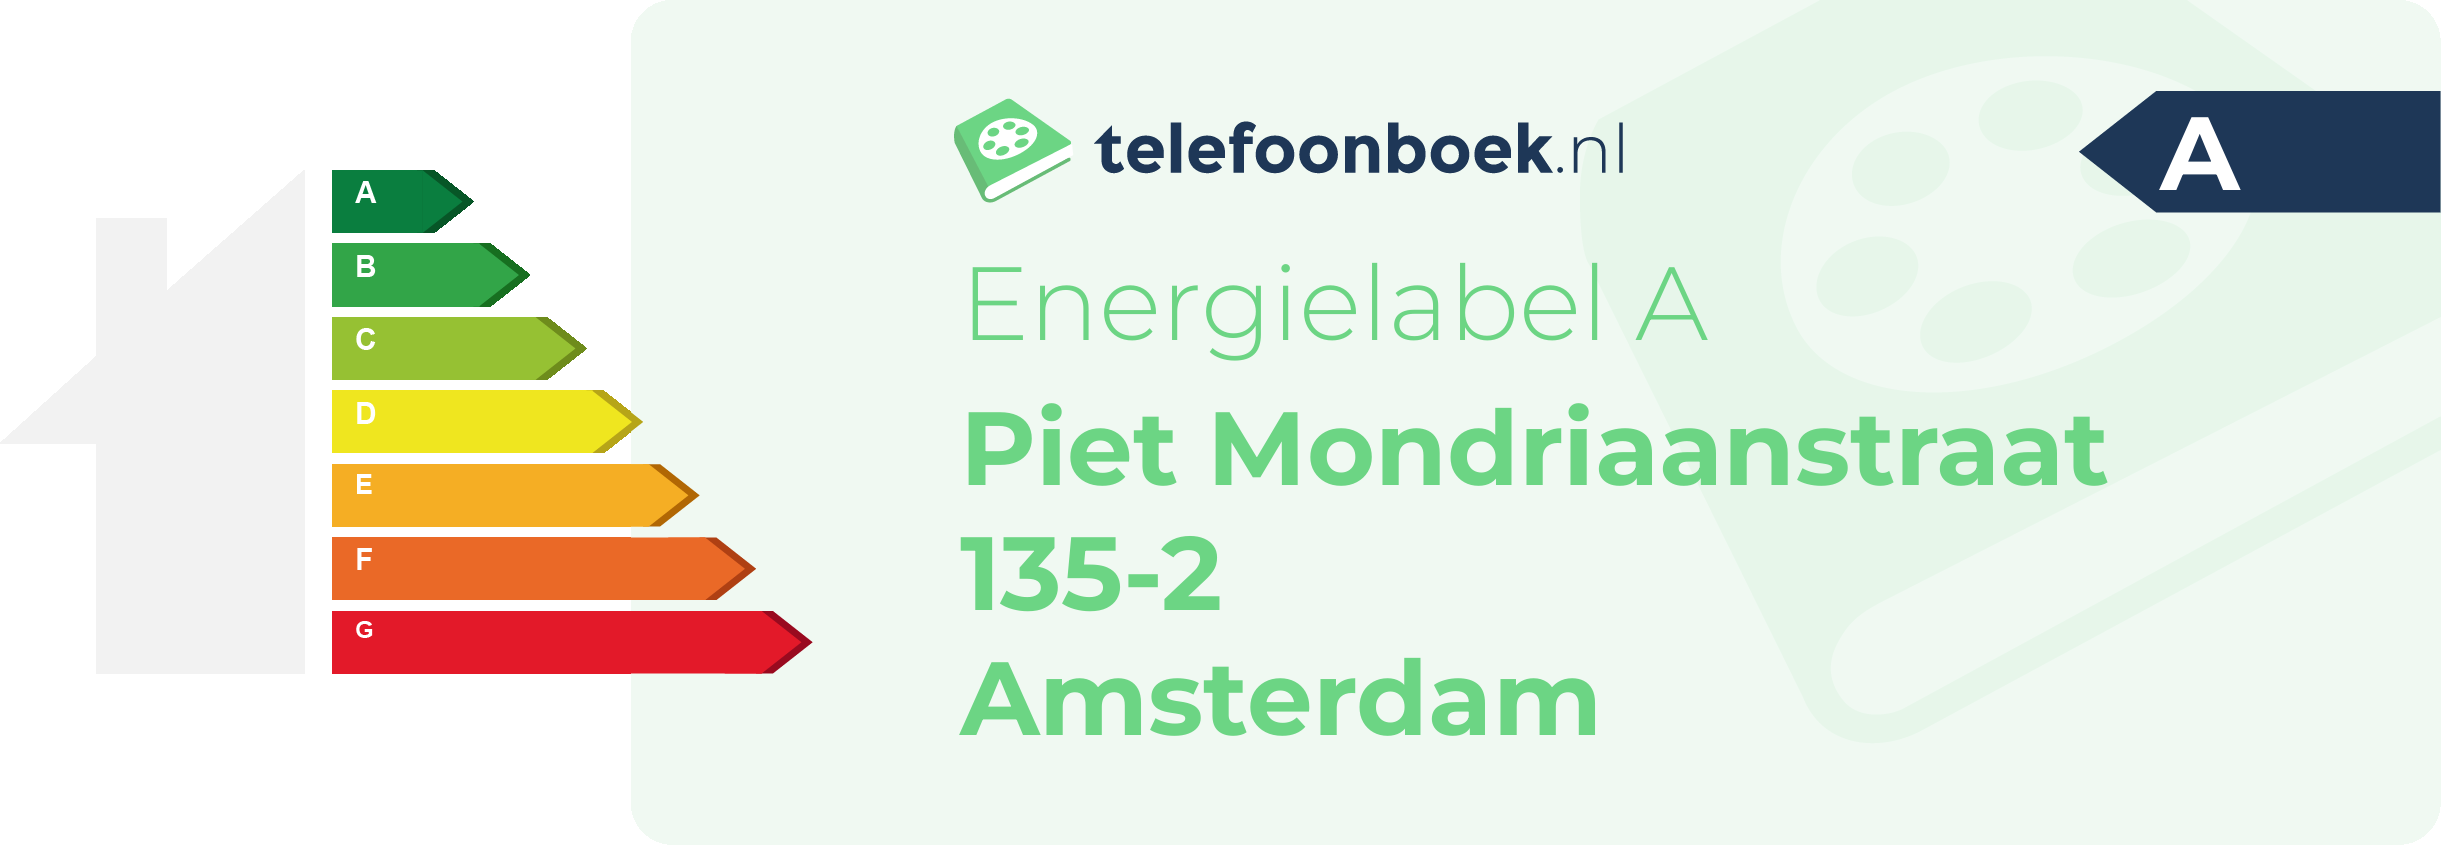 Energielabel Piet Mondriaanstraat 135-2 Amsterdam